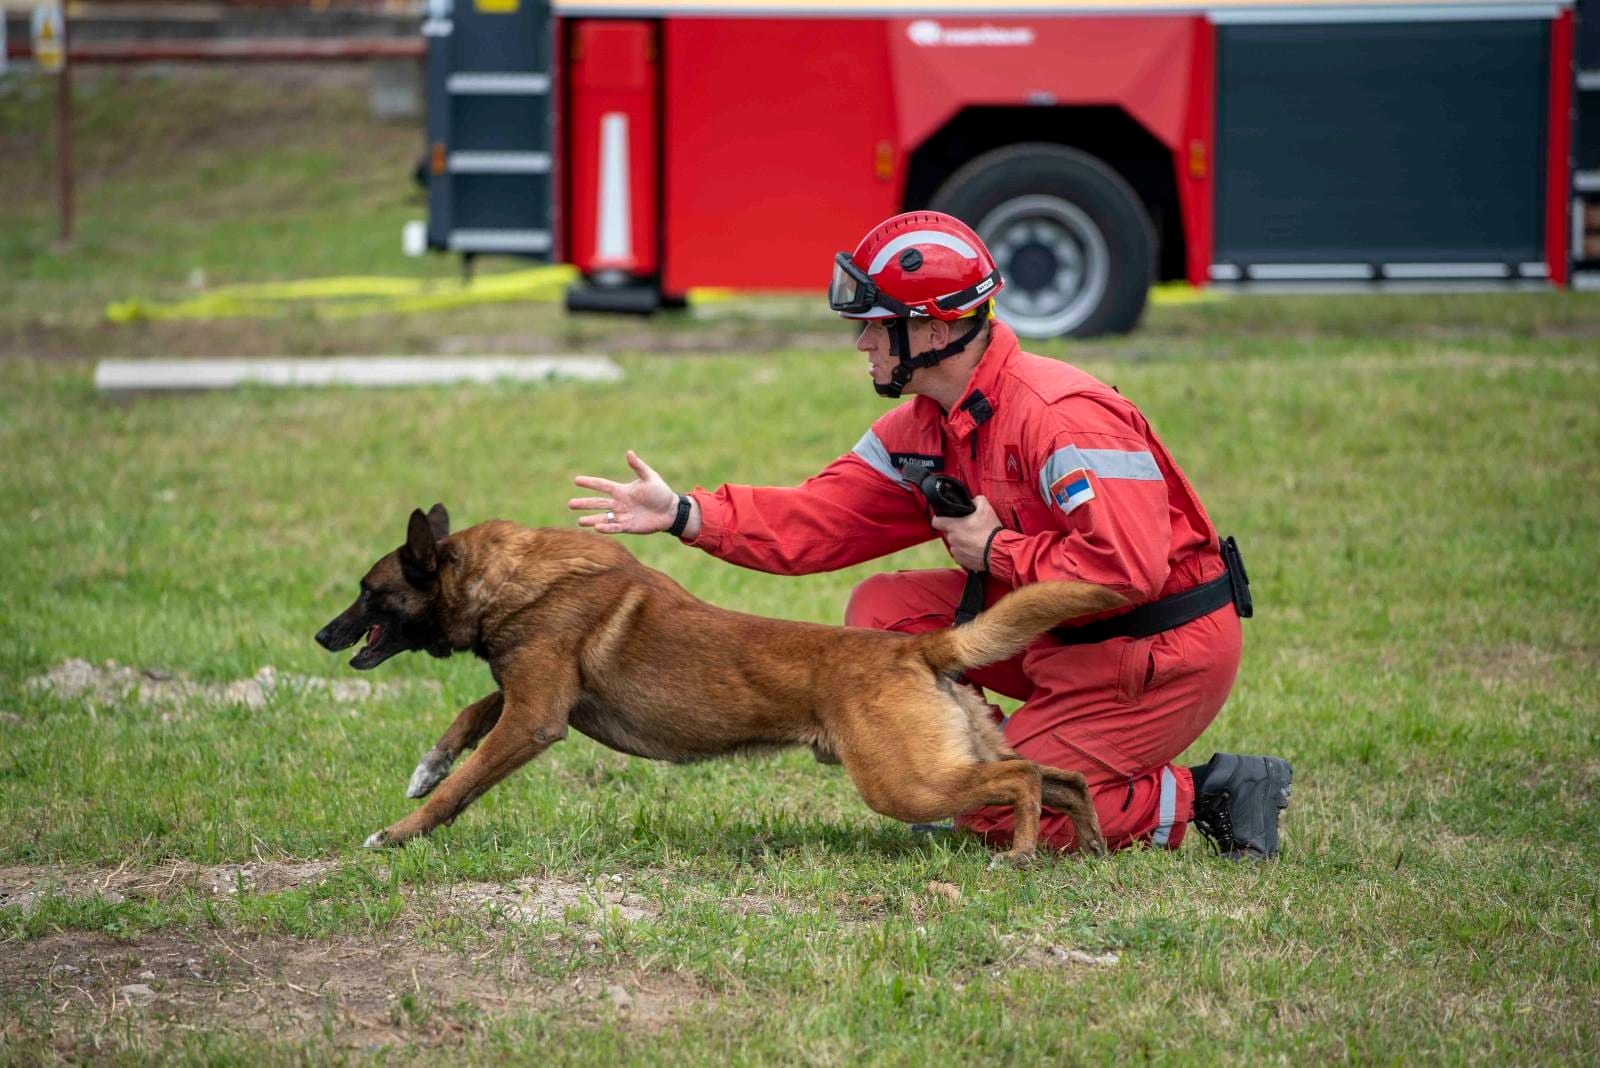 Kratkodlaki heroj: Ko je pas Zigi, koji je dosad spasio dva života u Turskoj? 3